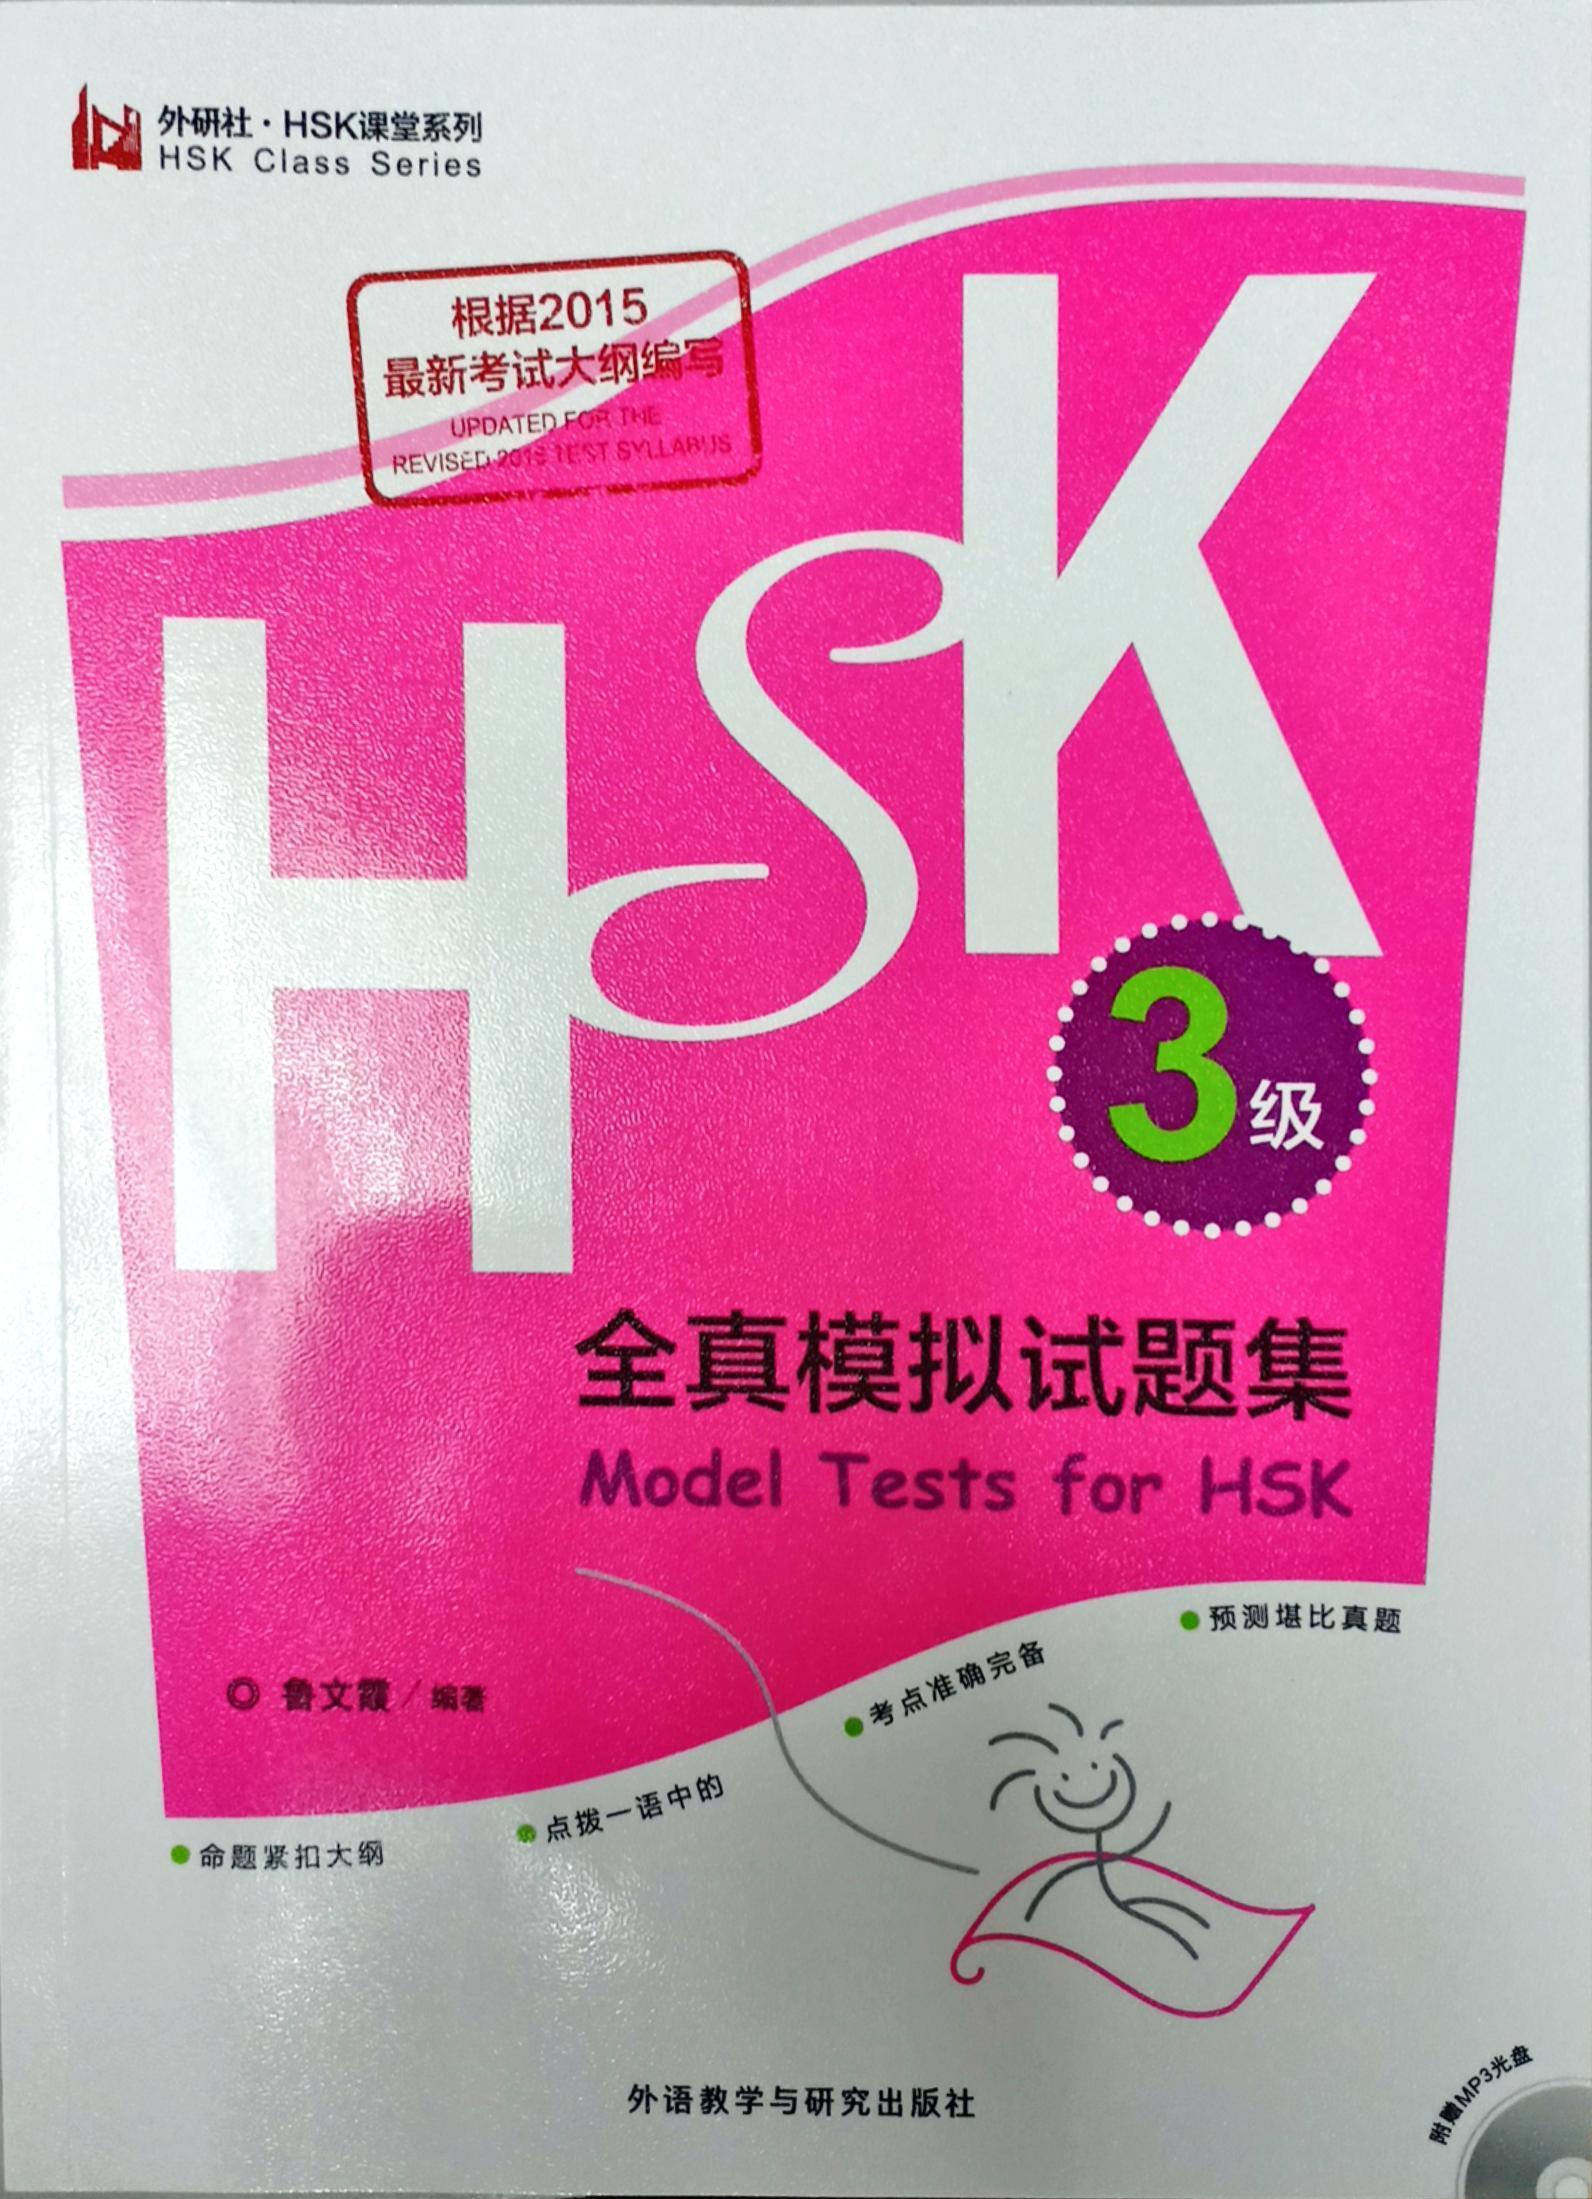 汉语水平考试HSK 3级全真模拟试题集(Model Tests for HSK Level 3 